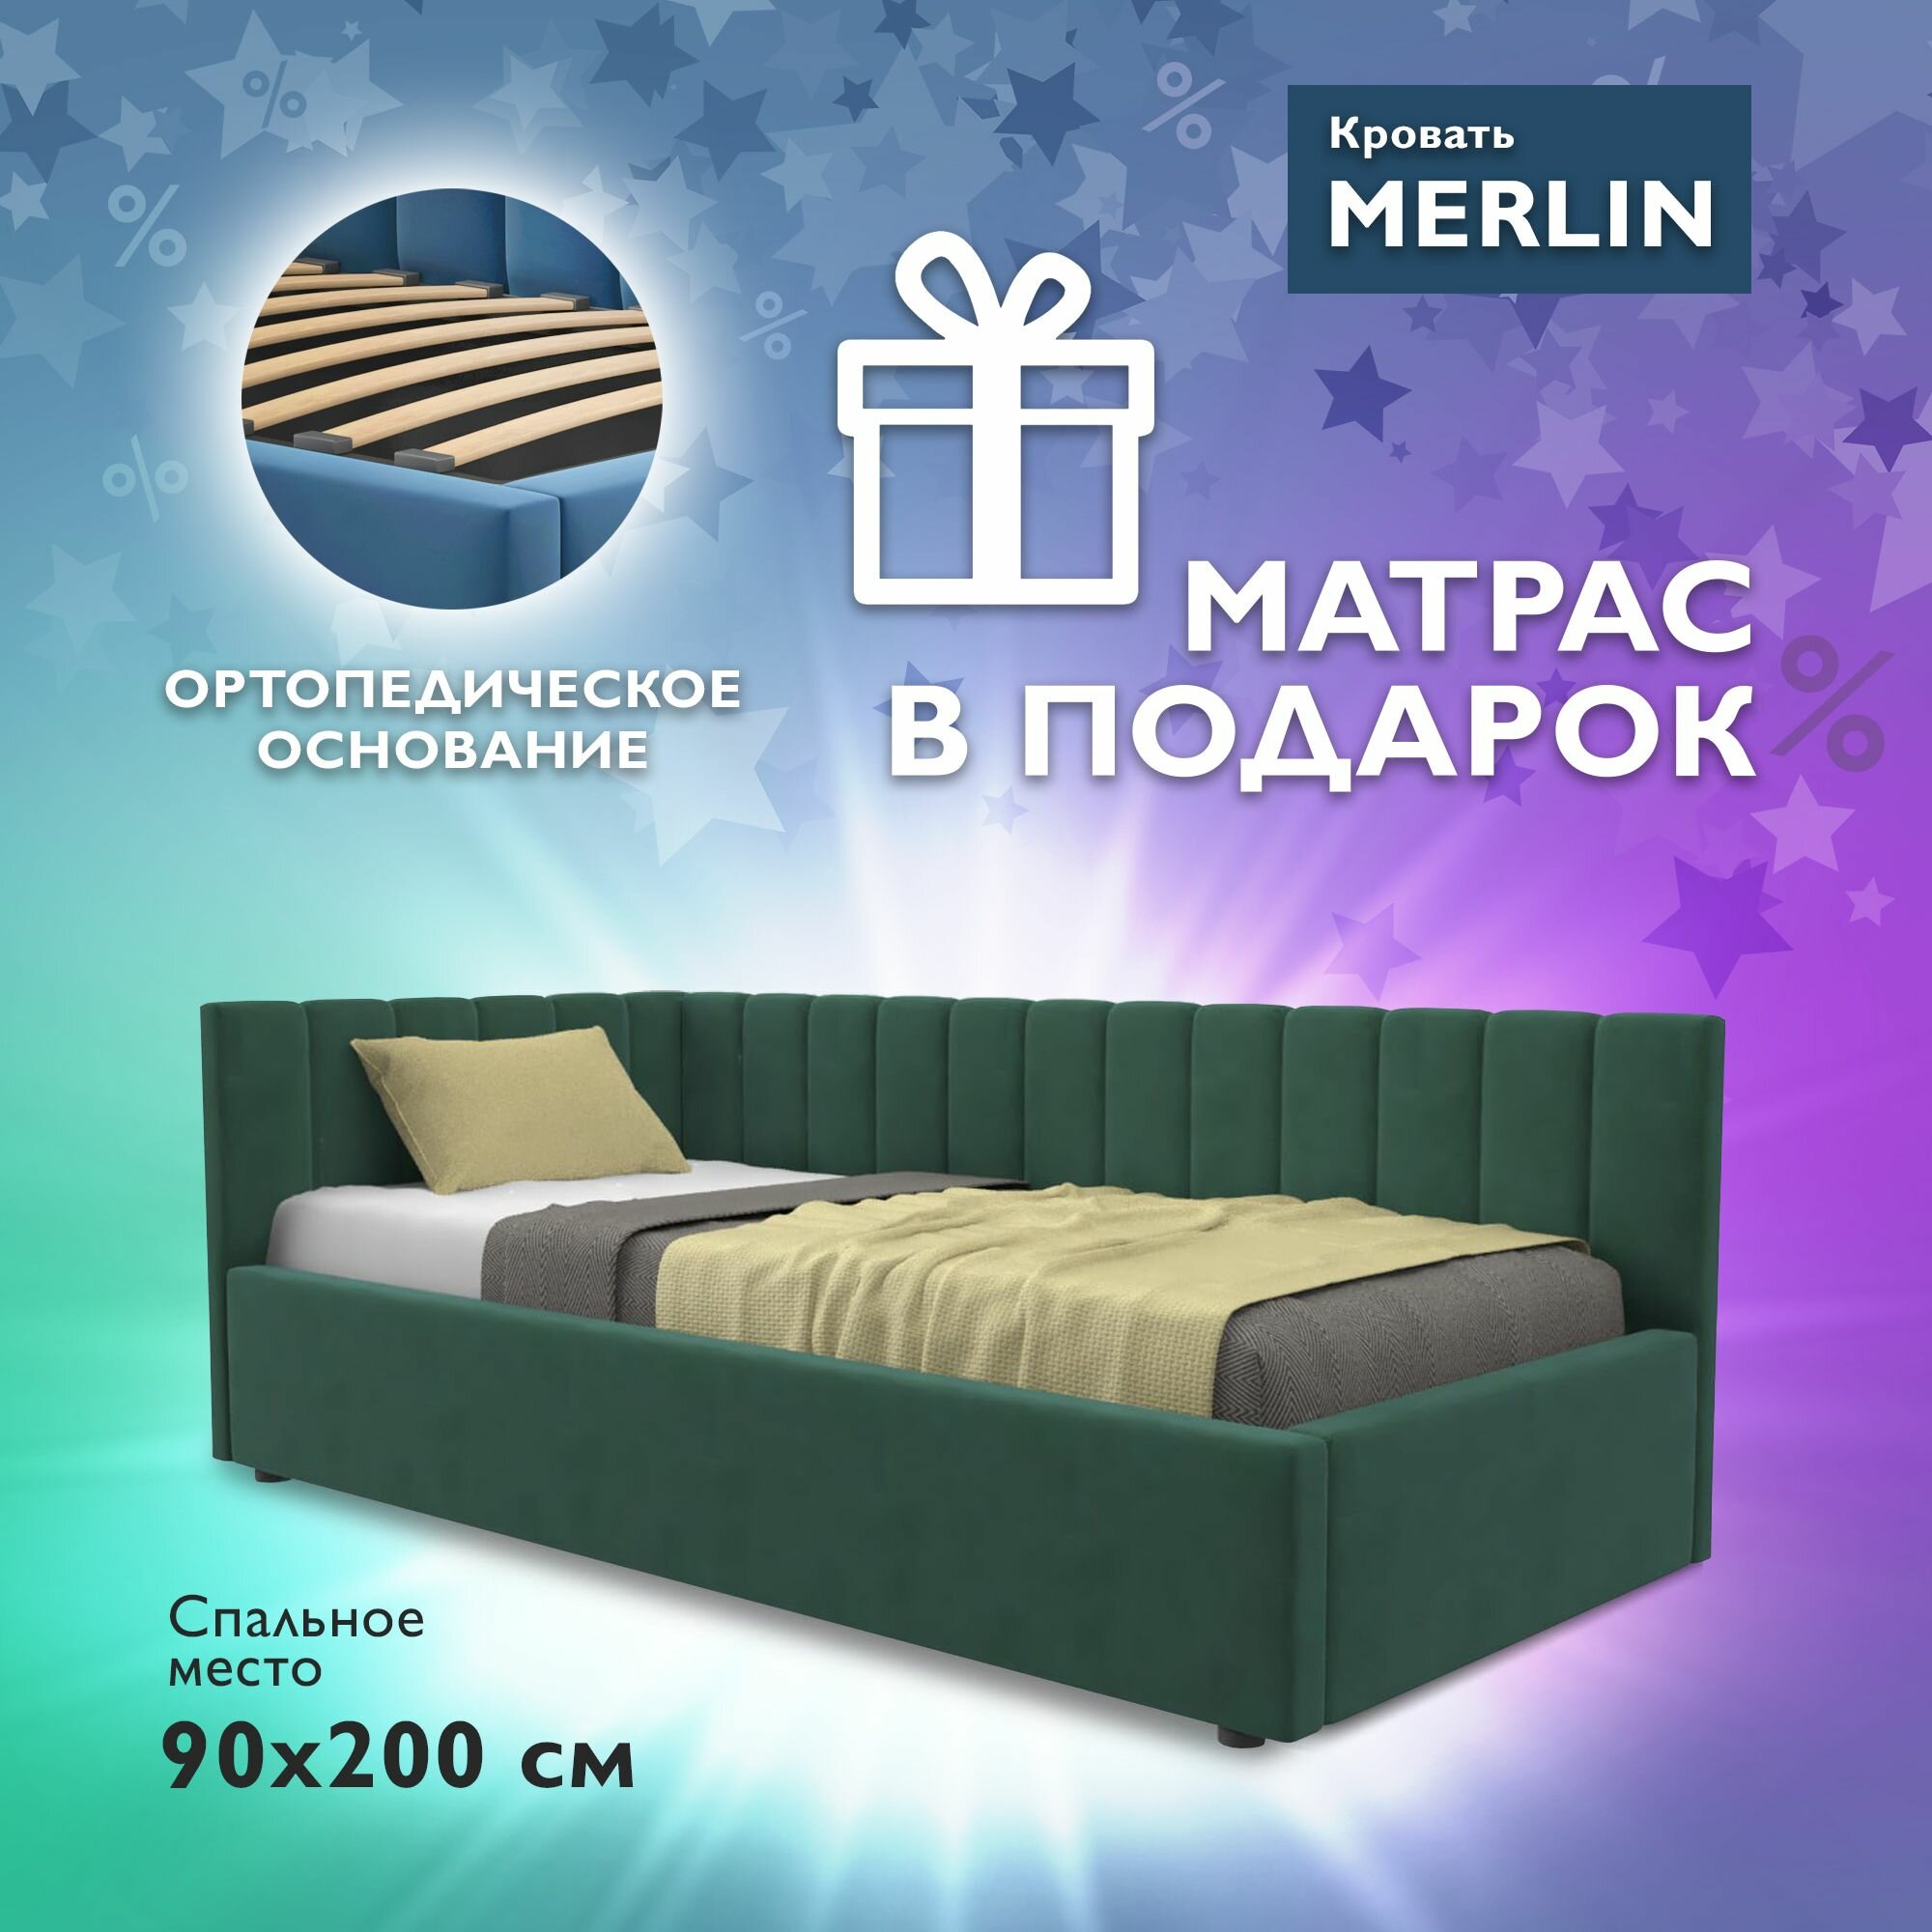 Односпальная угловая кровать c матрасом, Тахта 90х200 с мягкой спинкой "MERLIN-CEYLON" детская, для подростков, диван